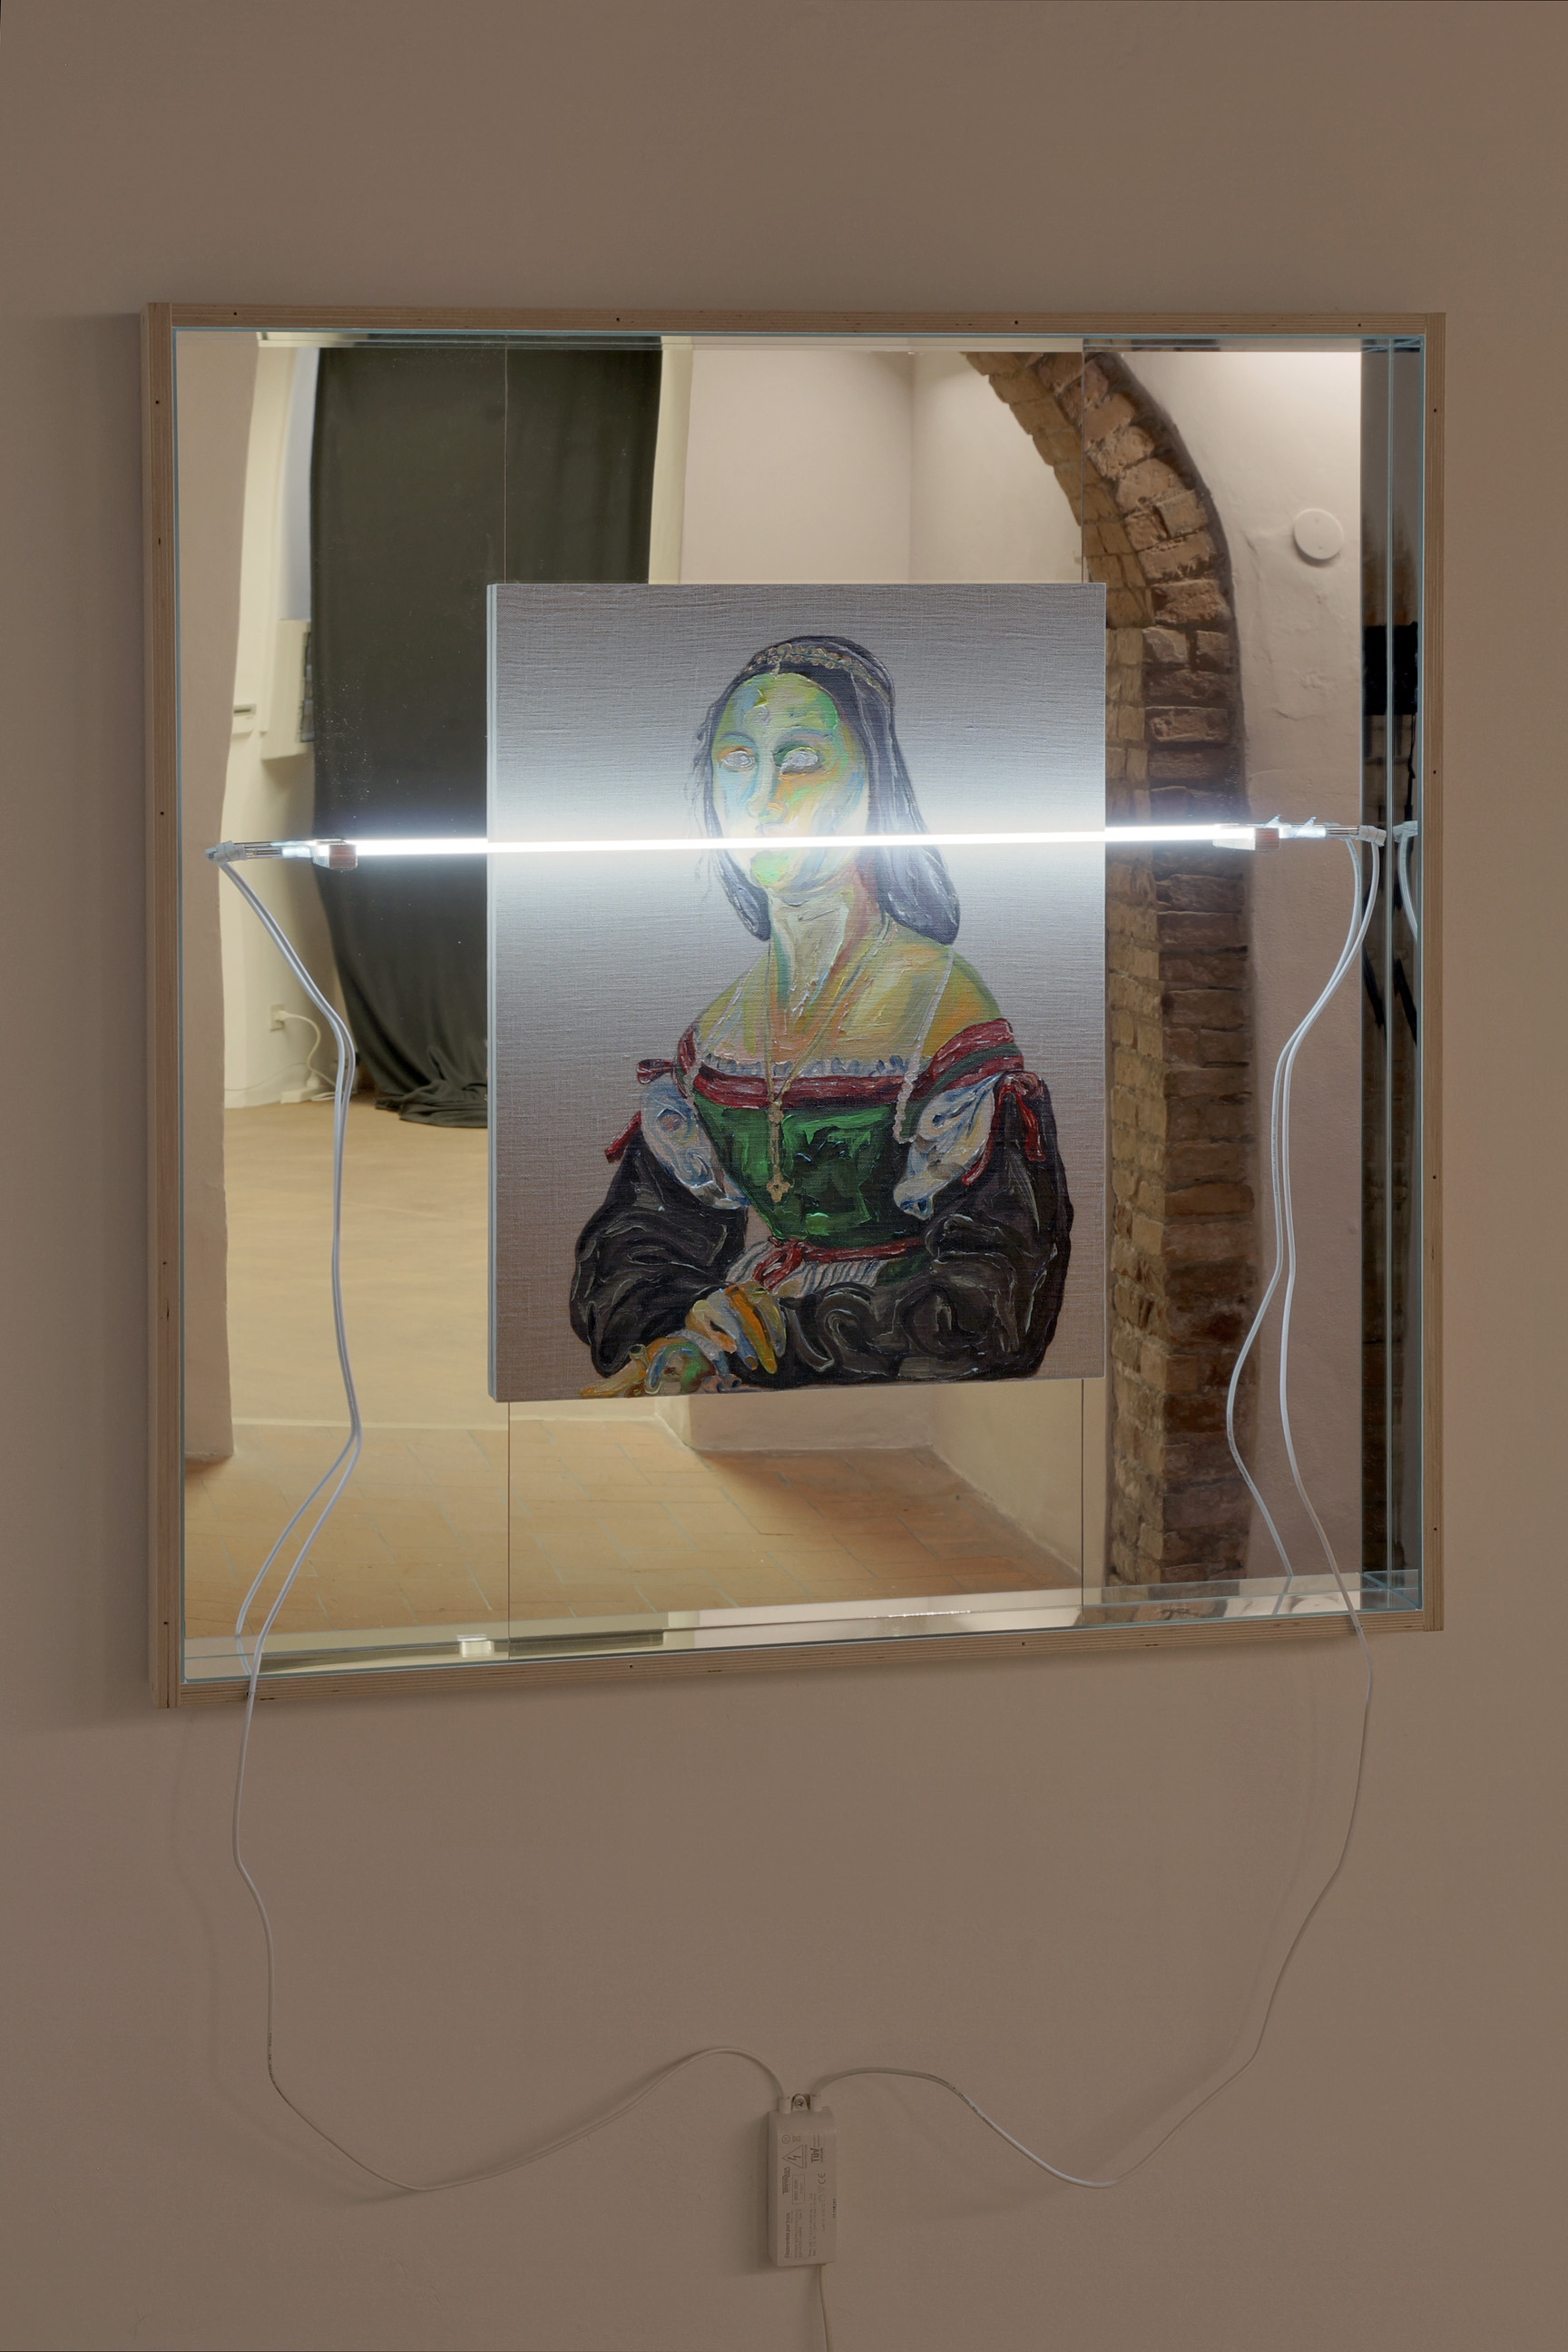 Matteo Fato, Senza titolo (1507 - 2015), 2015 olio su lino foderato su tavola, neon / oil on linen lined on wood, neon, (48 x 64 cm), cornice in multistrato e specchio /  frame in plywood and mirror dimensione totale / total size, 88 x 104 cm